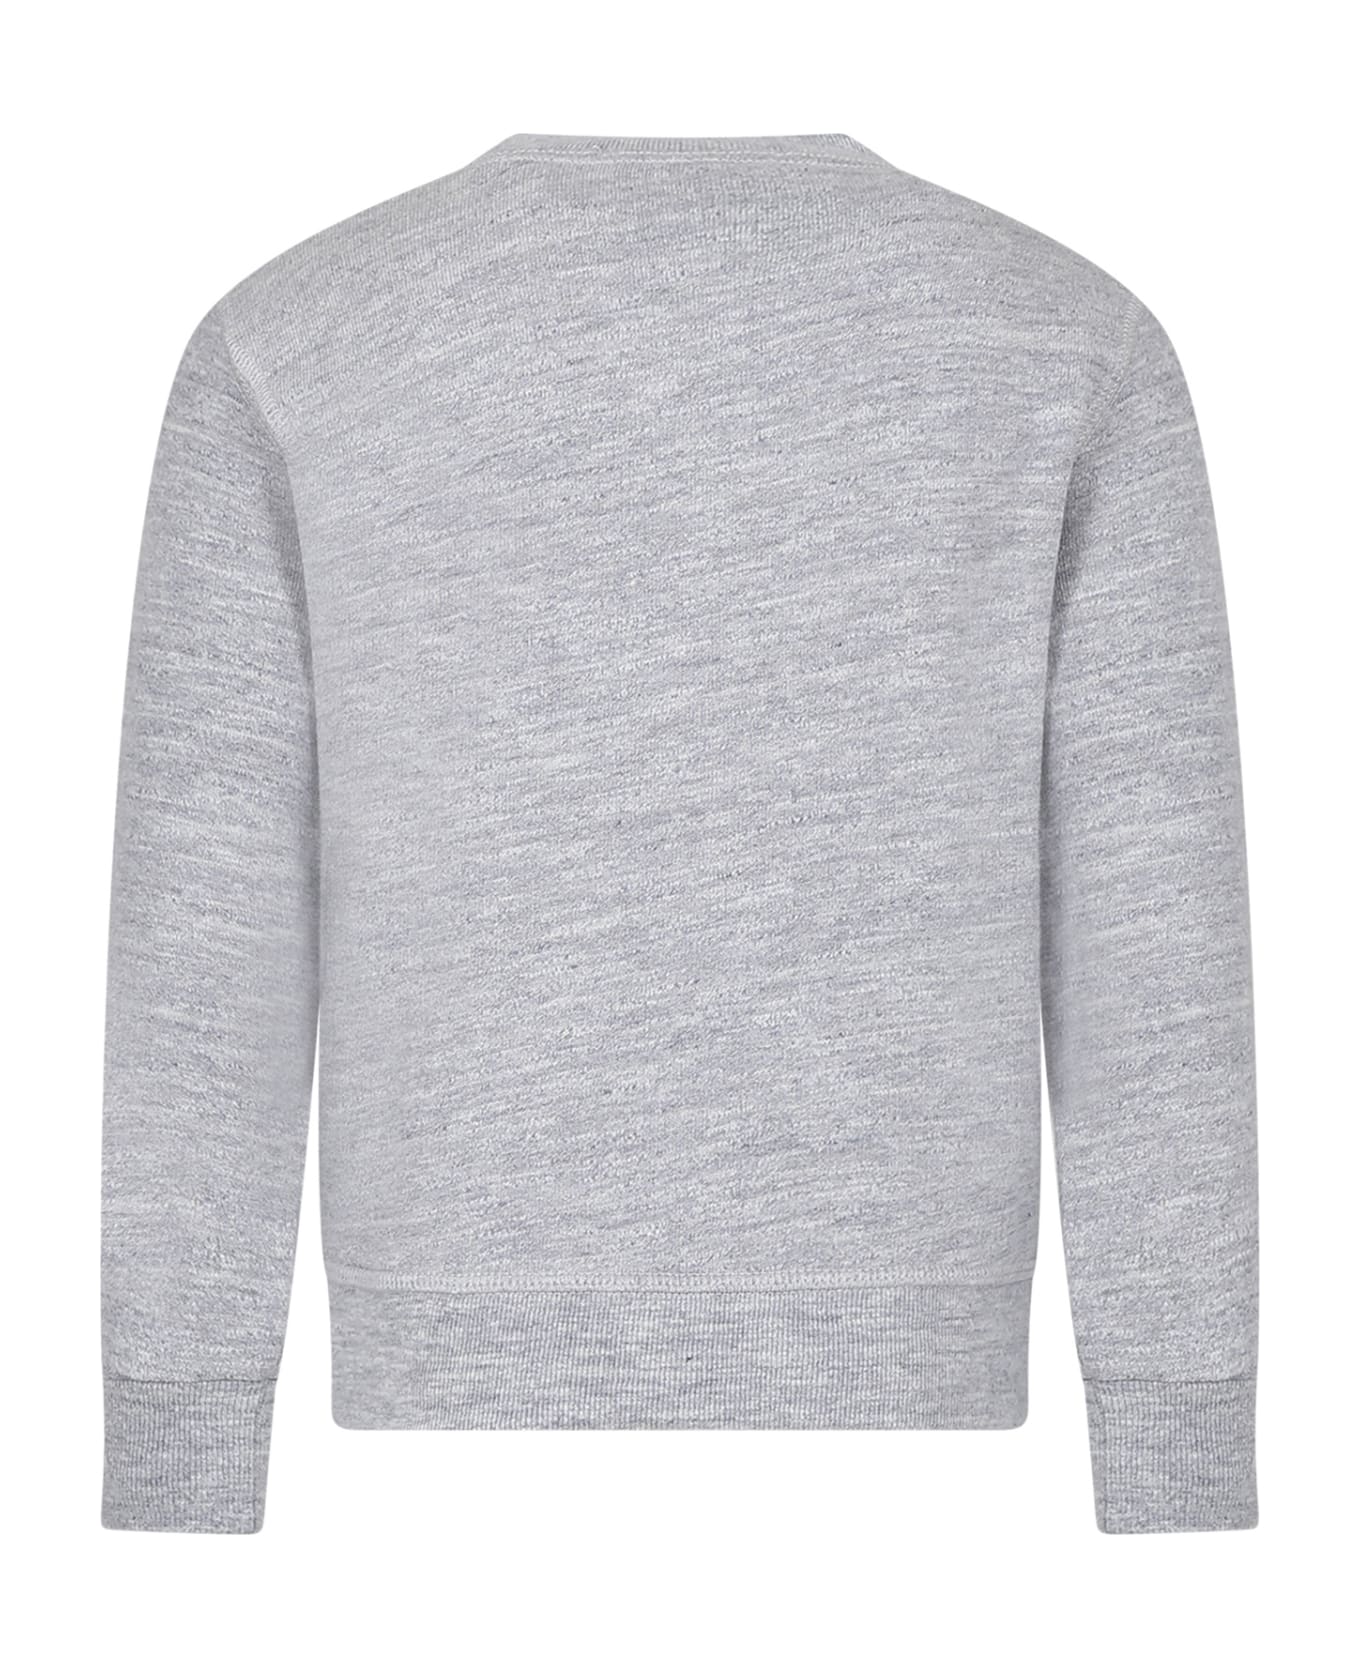 Dsquared2 Grey Sweatshirt For Boy Woth Logo - Grey